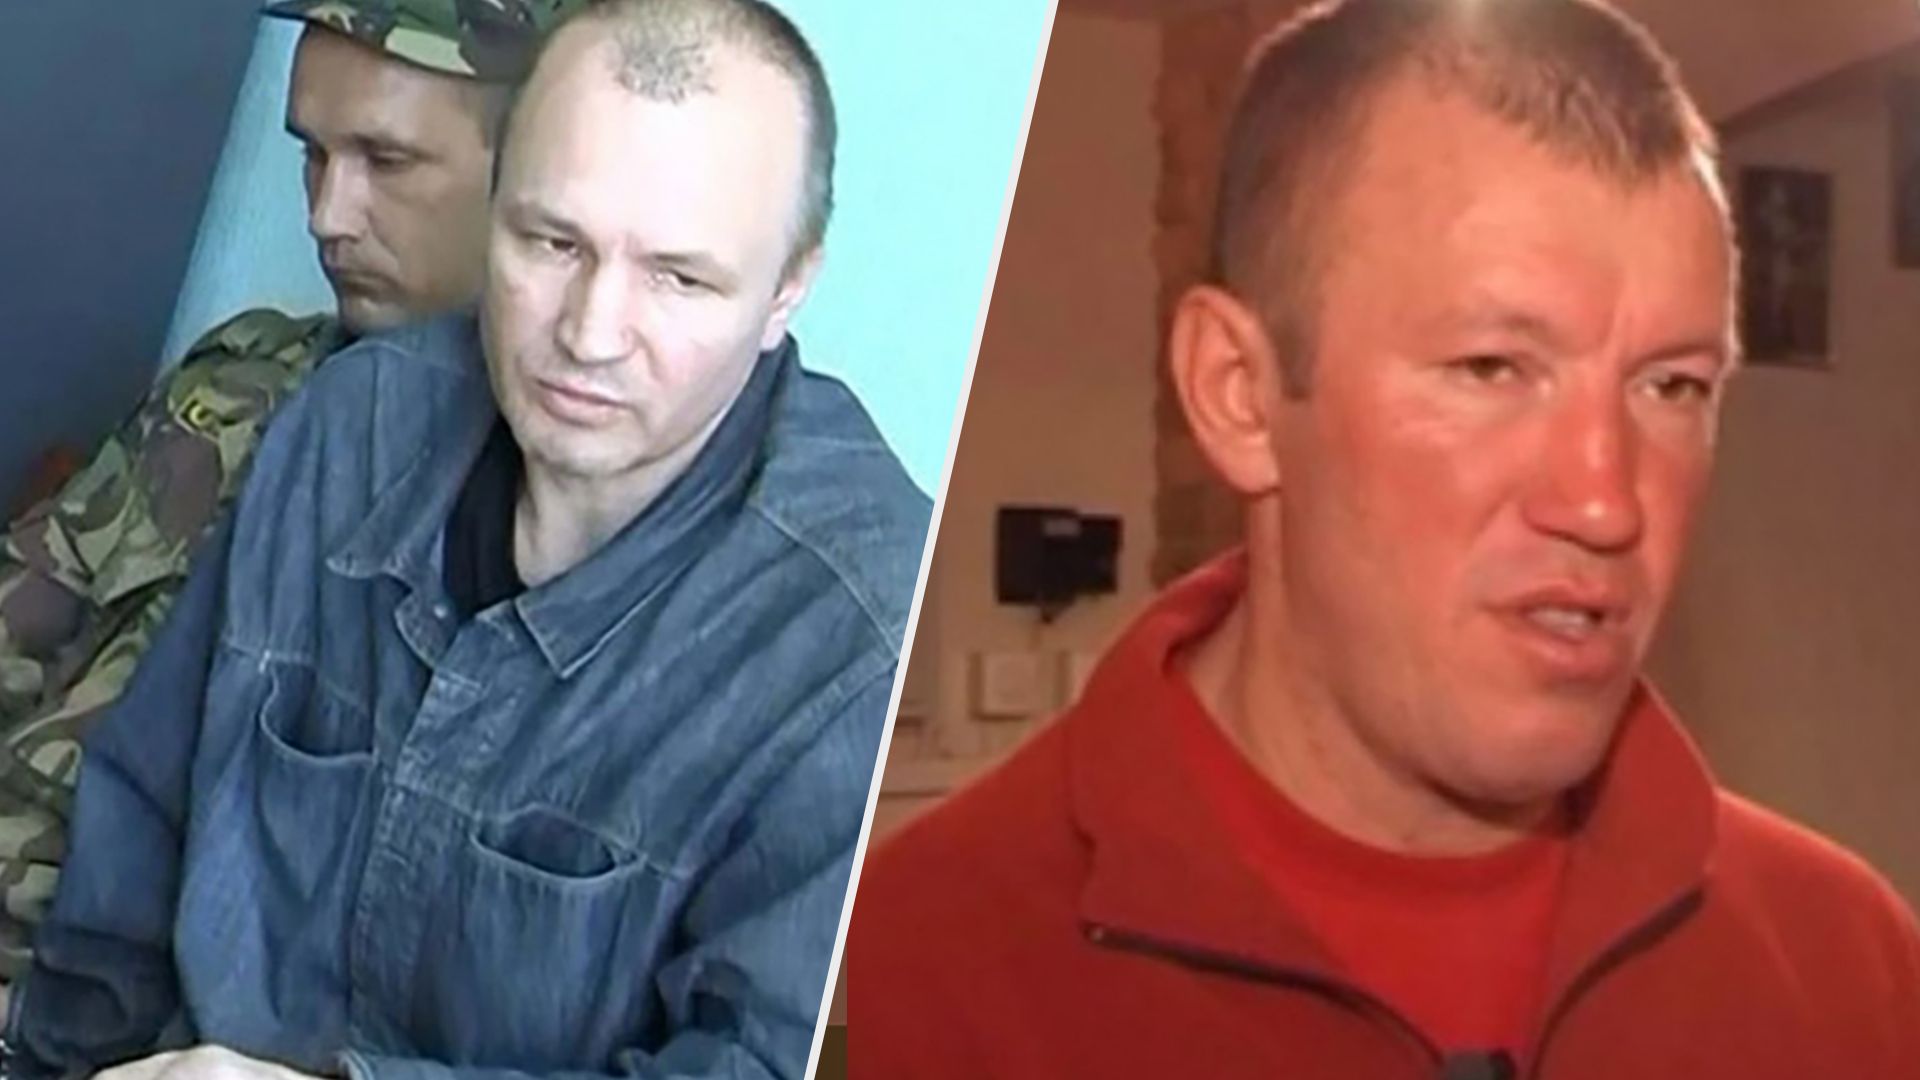 Трьох вагнерівців ліквідували в Україні - вони були кримінальними авторитетами - Bellingcat